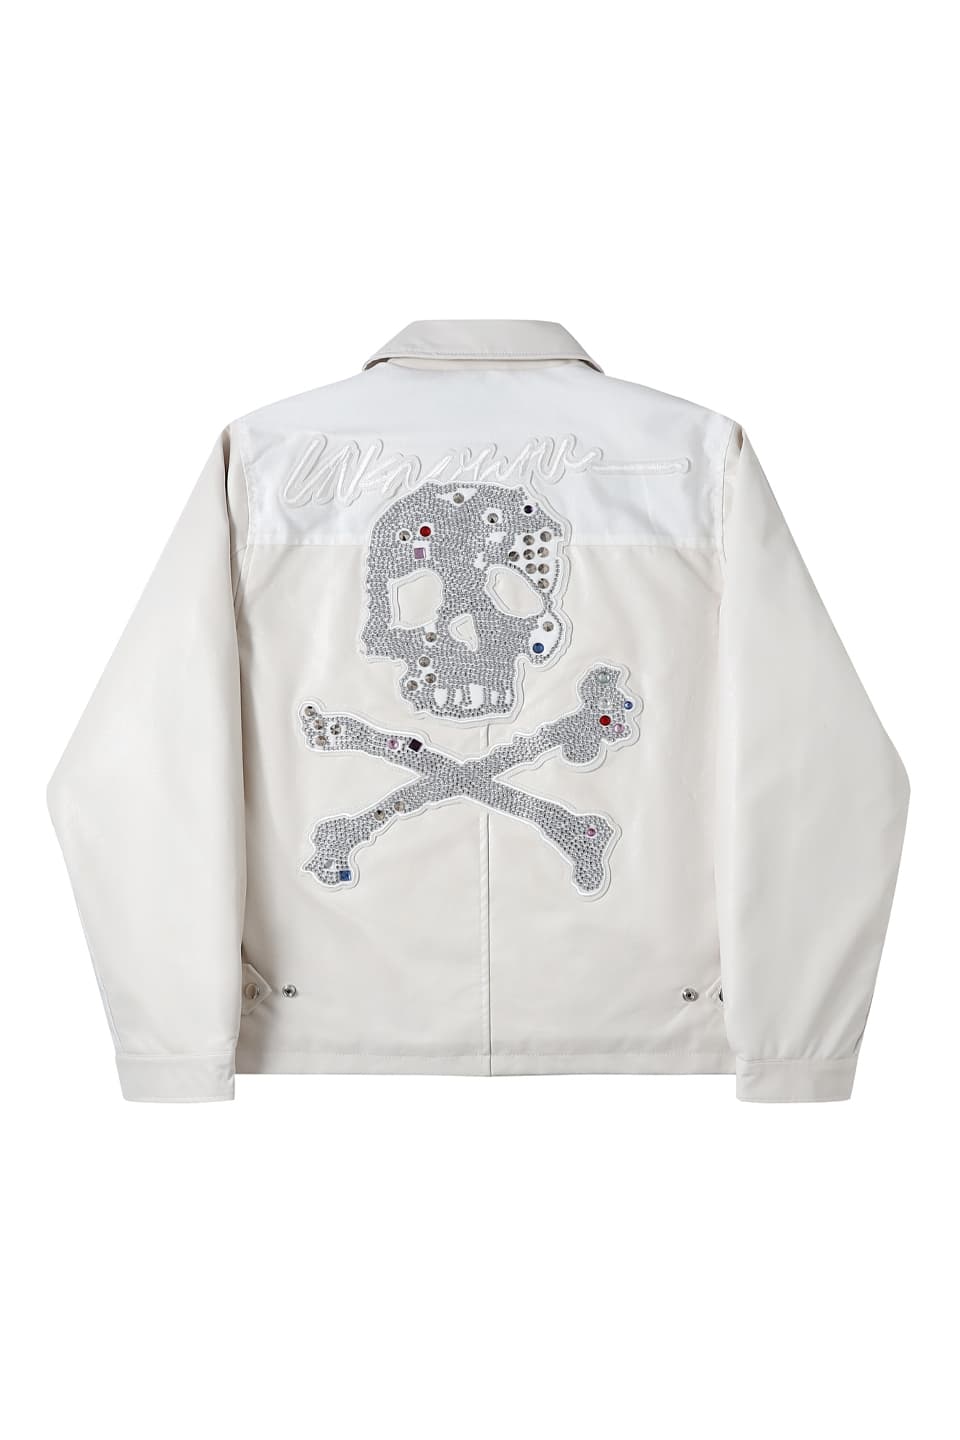 Jewel Skeleton Leather Jacket